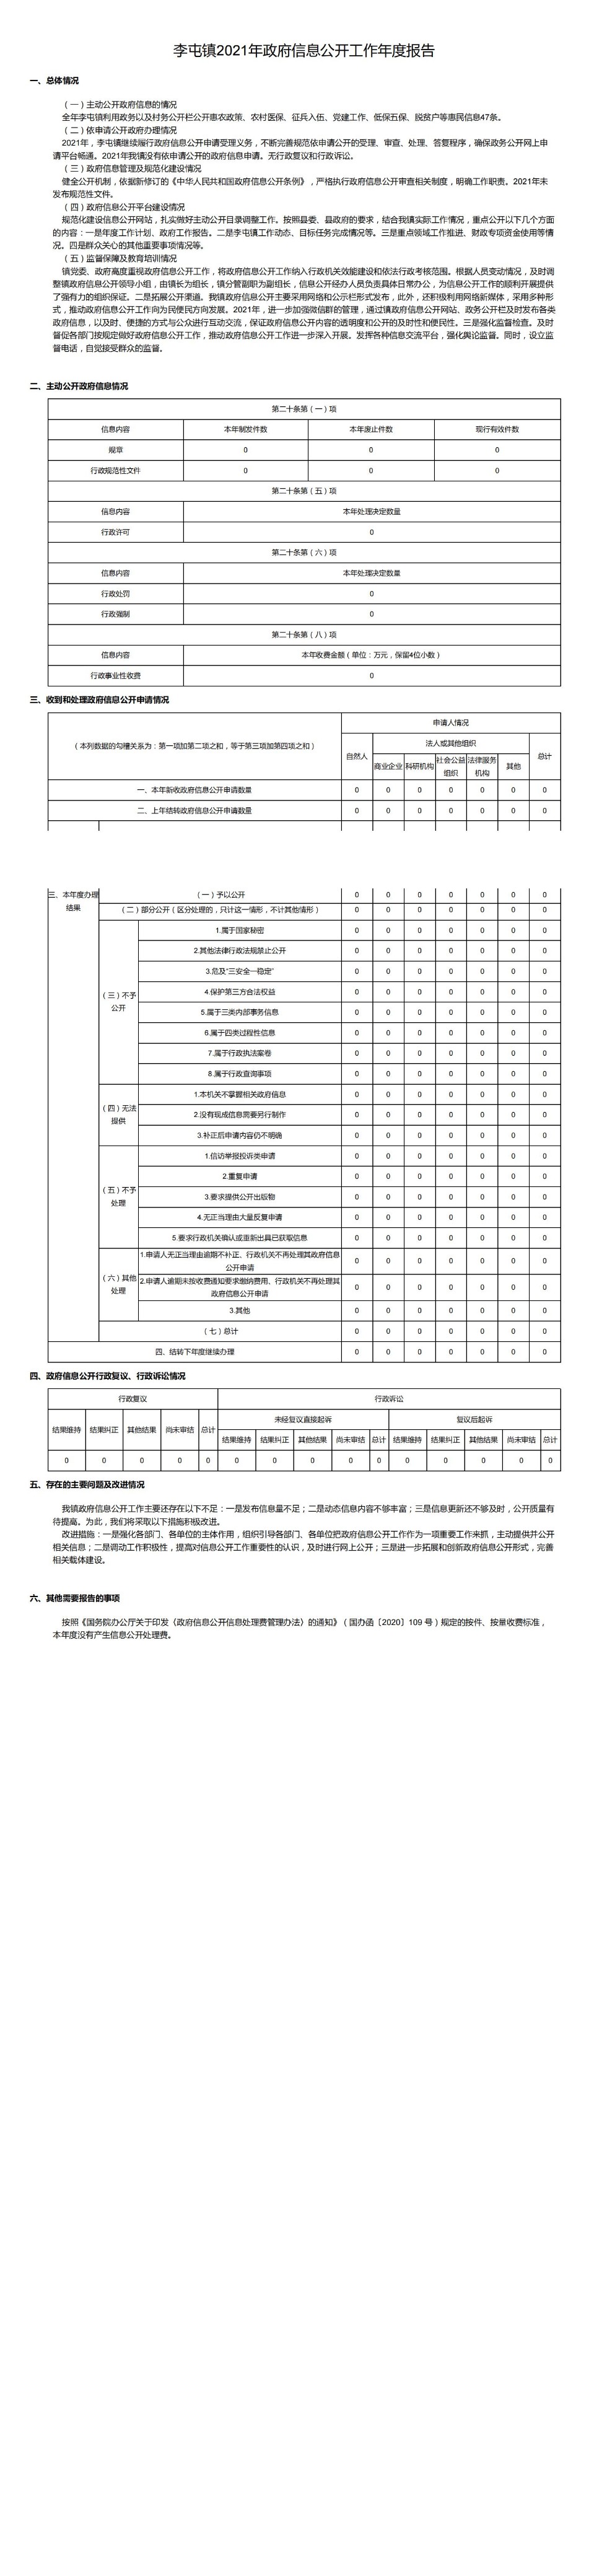 李屯镇2021年政府信息公开工作年度报告_00.jpg